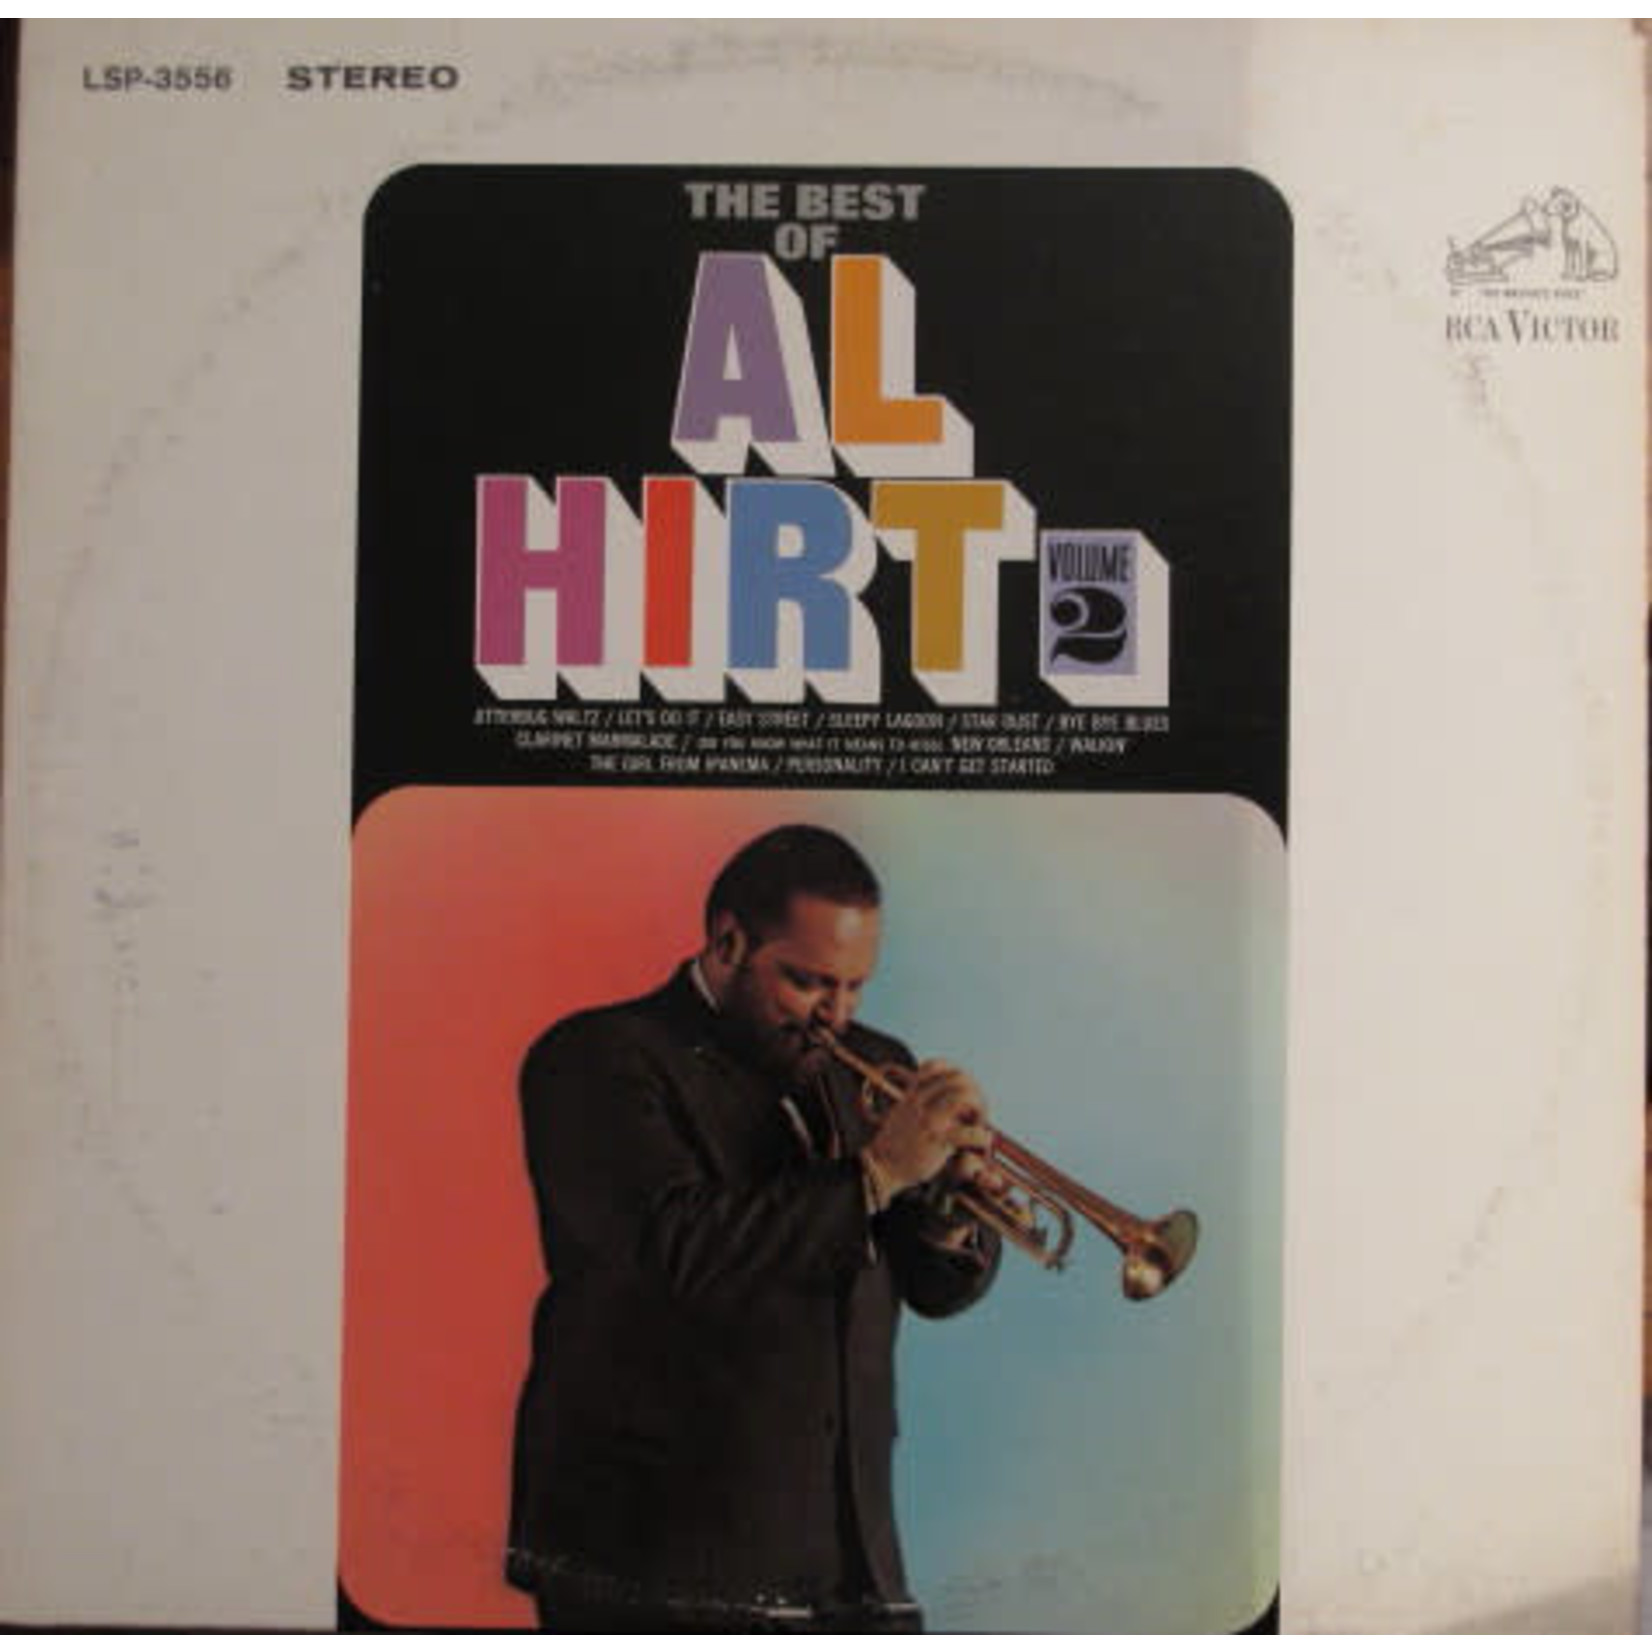 Al Hirt Al Hirt – The Best Of Al Hirt Volume 2 (VG, 1966, LP, Stereo, RCA Victor – LSP-3556, Canada)